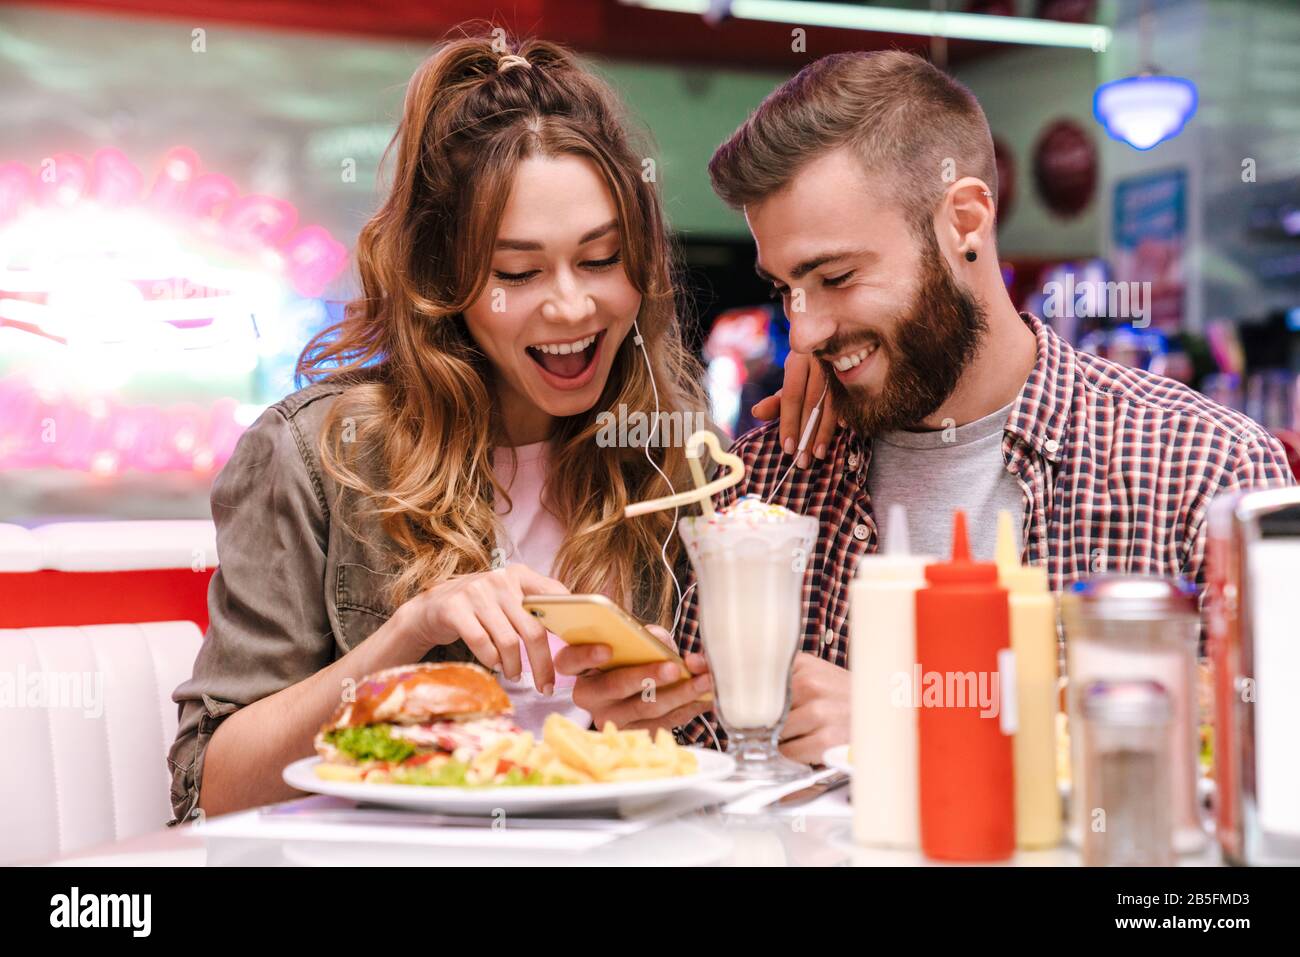 L'image d'un jeune couple joyeux et joyeux s'assoit dans un café de cuisine de rue rétro lumineux utilisant la musique d'écoute de téléphone mobile avec écouteurs. Banque D'Images